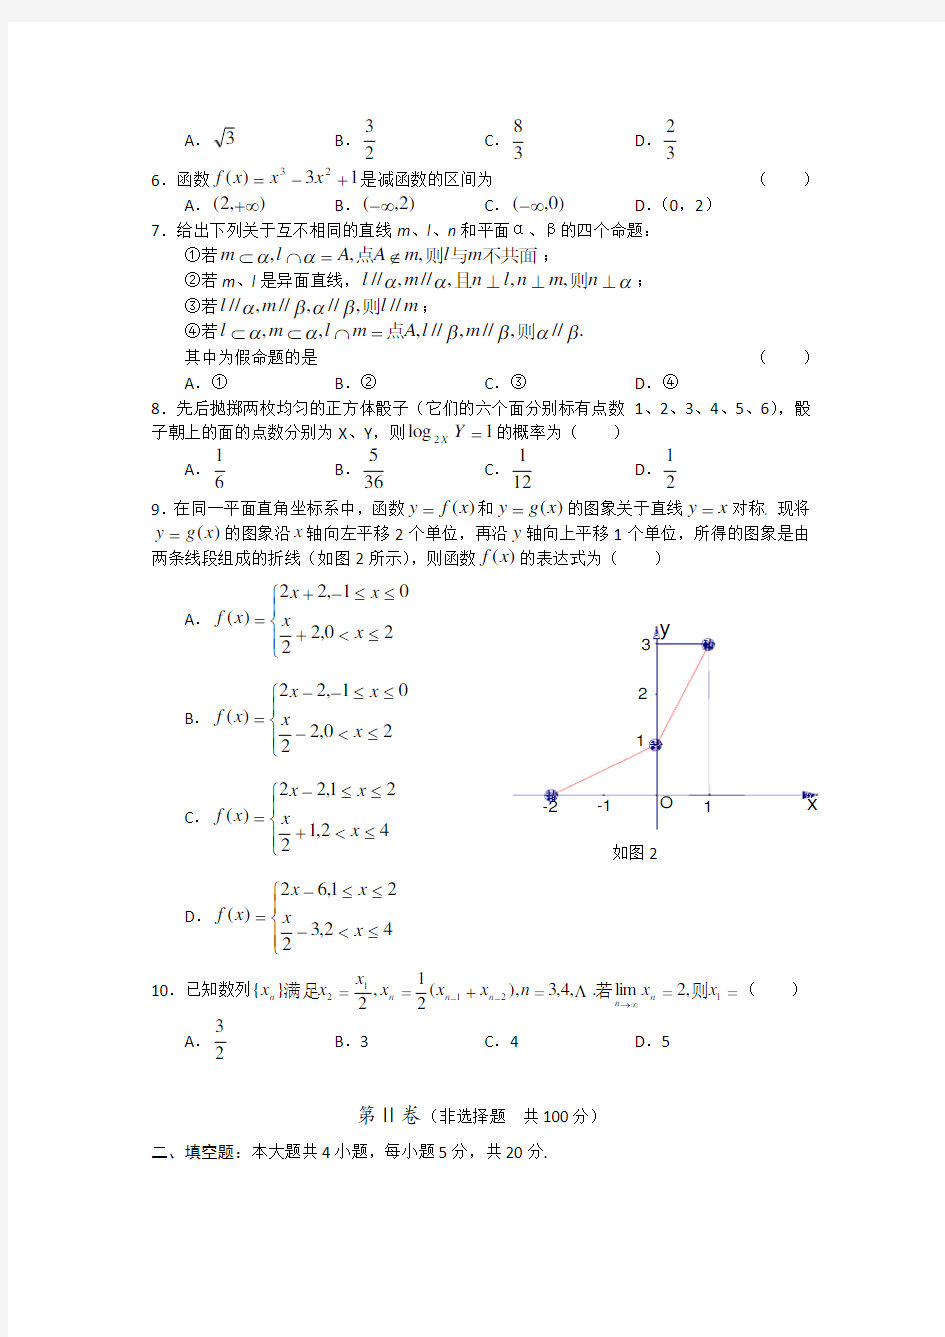 2005年高考数学(广东卷)试题及答案